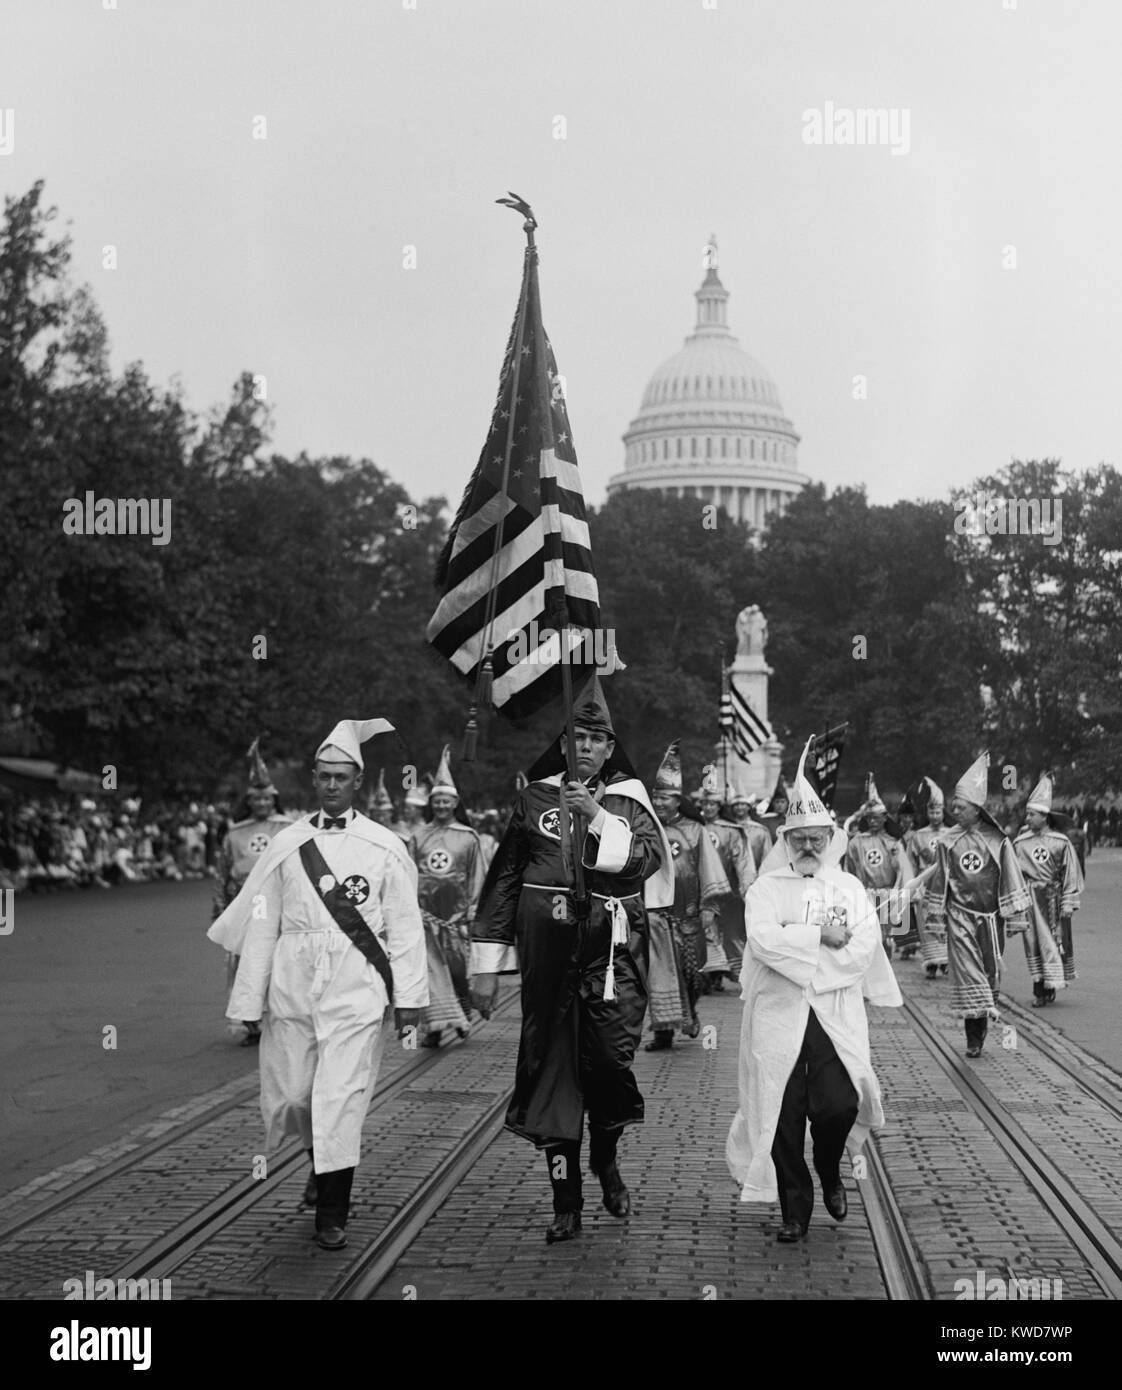 Ku Klux Klansmen sulla sfilata in Pennsylvania Avenue con il Campidoglio in background. Washington, D.C. Sett. 13, 1926. (BSLOC 2015 16 184) Foto Stock